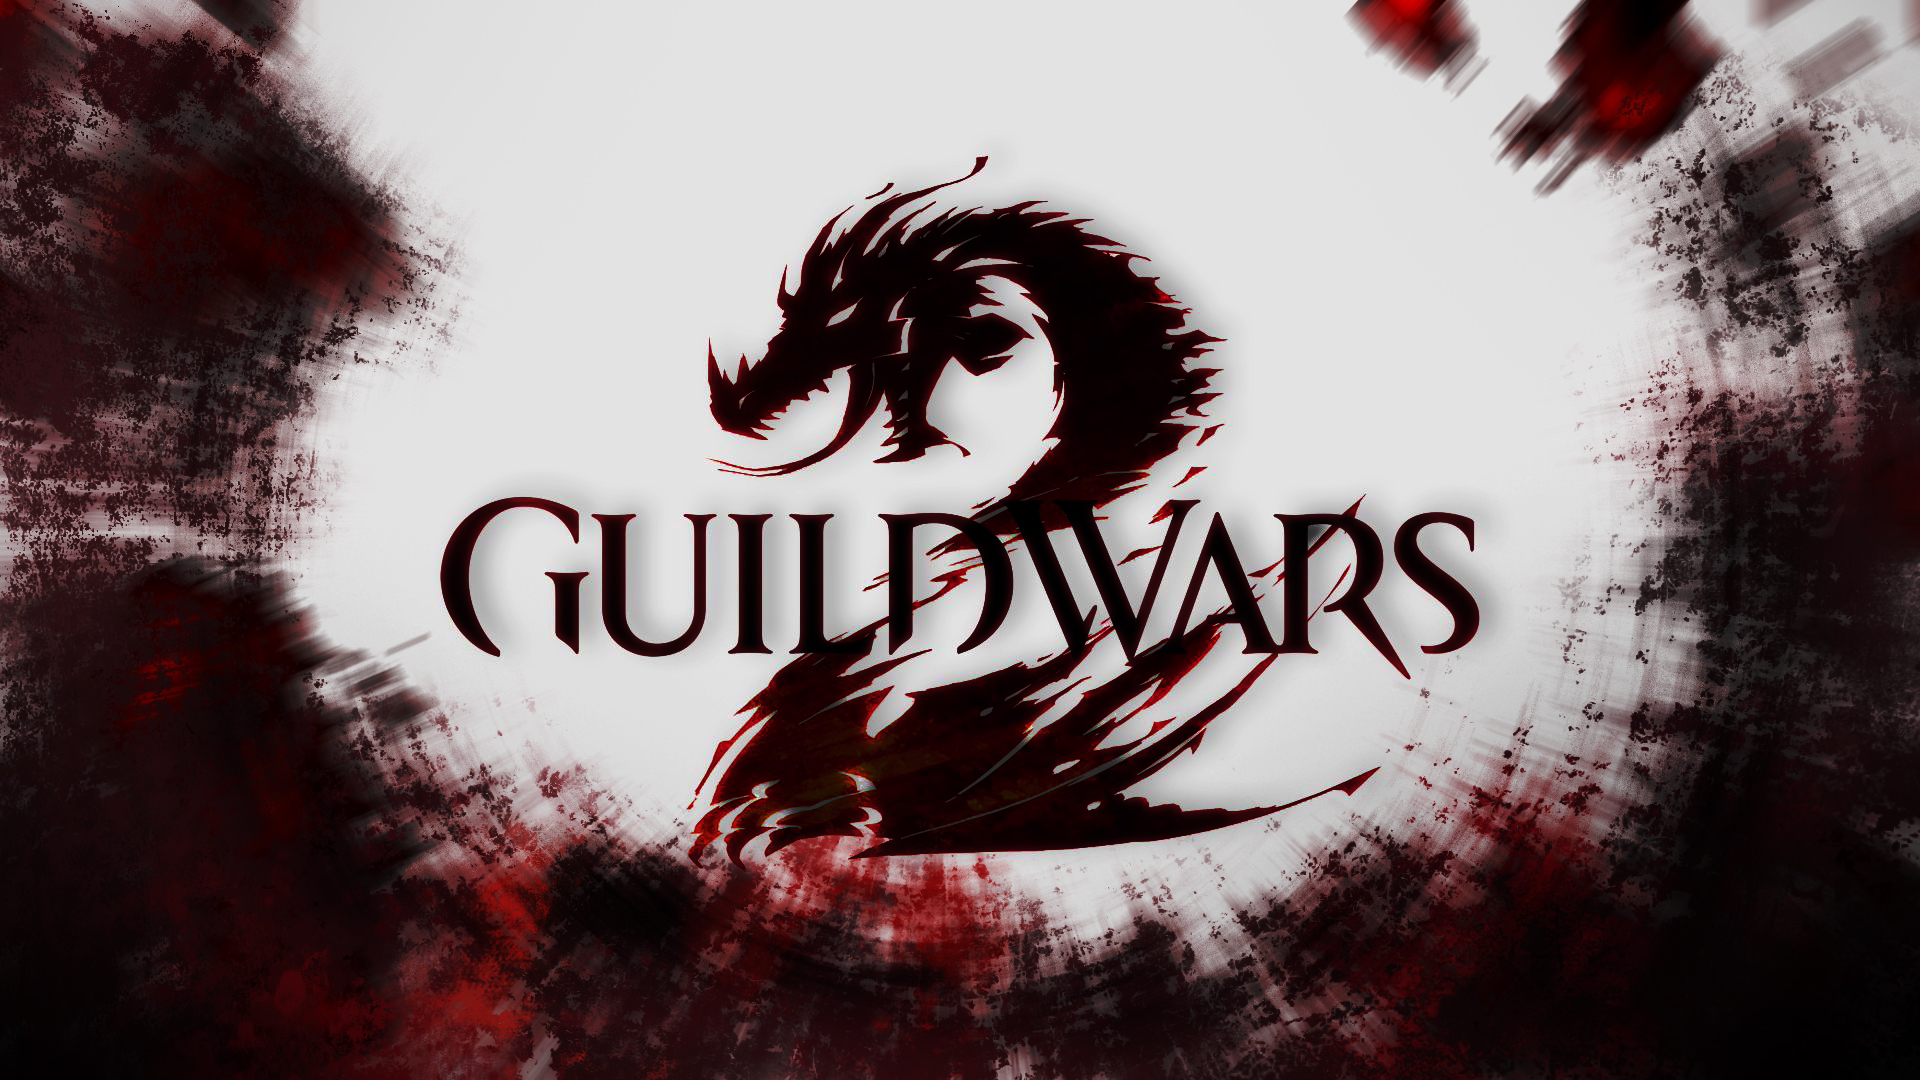 Guild Wars Wallpaper In HD